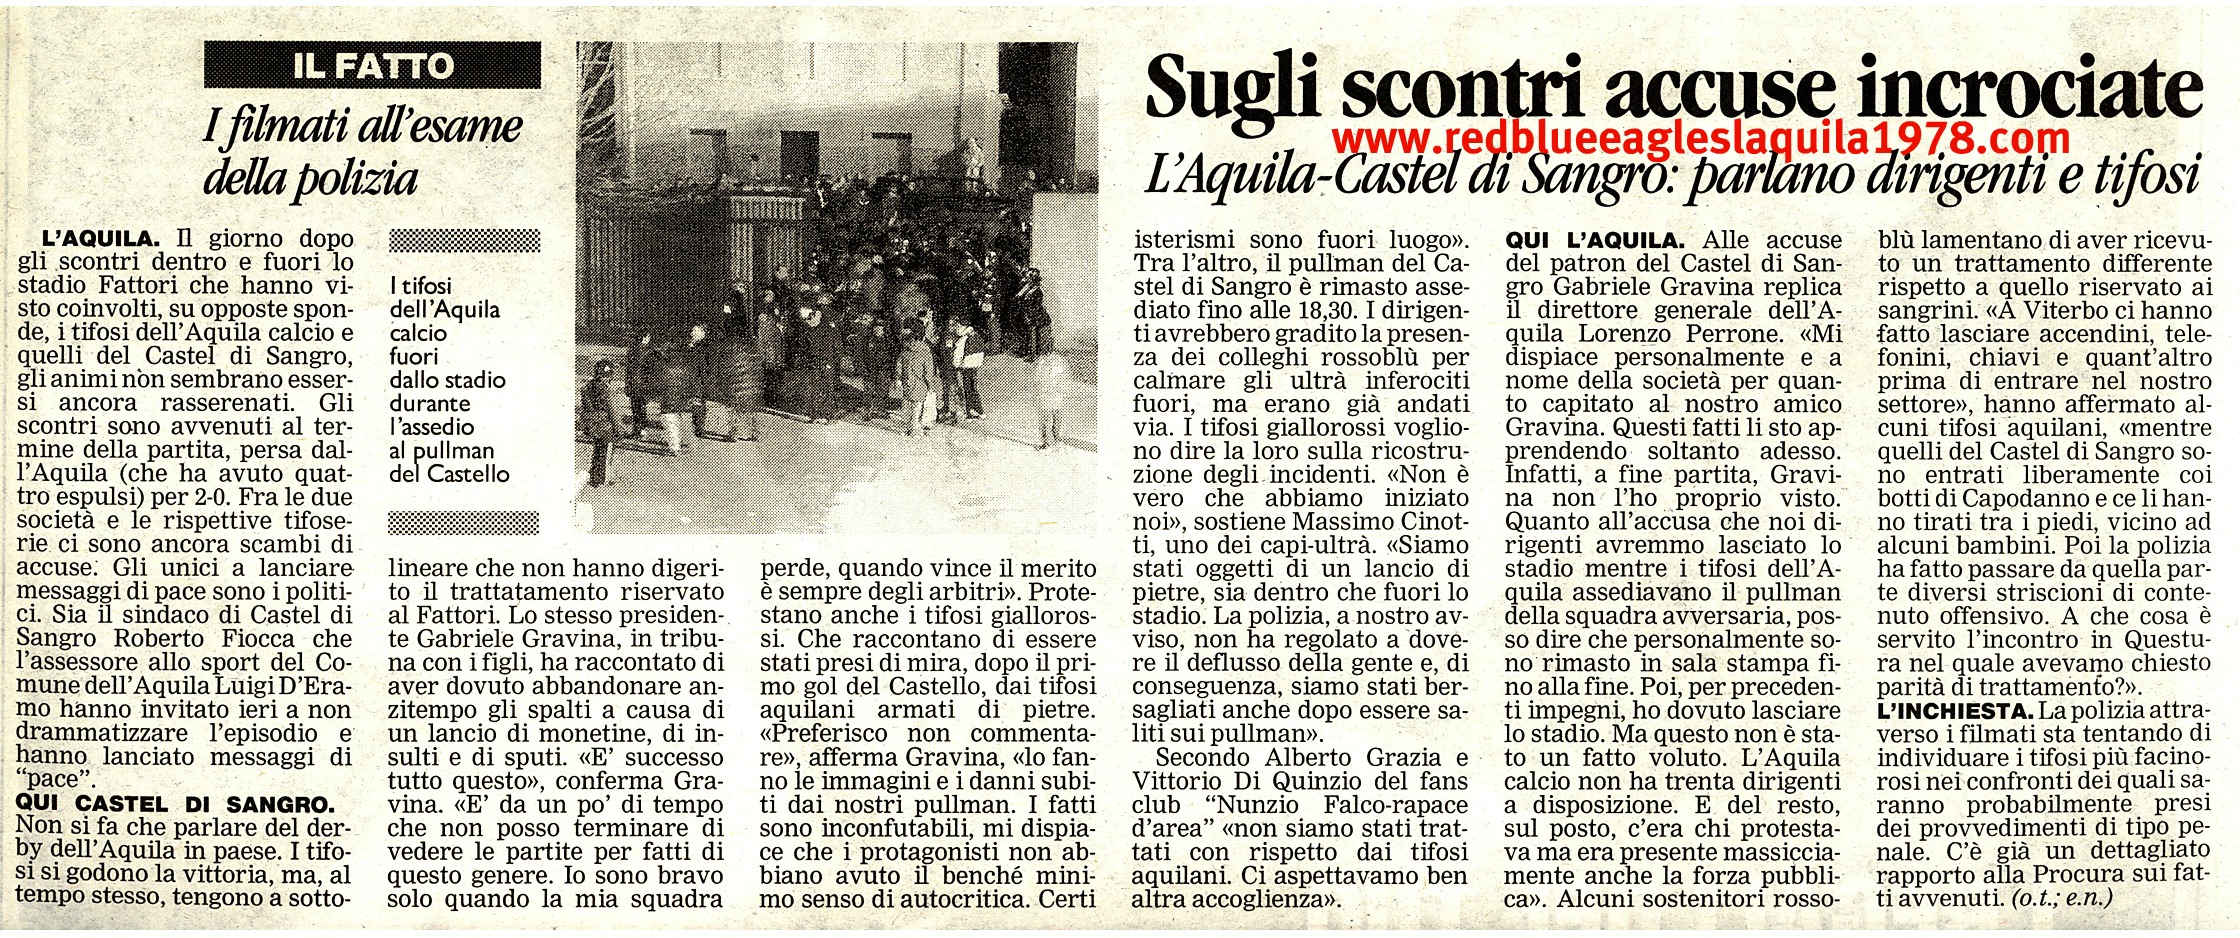 Scontri con lancio di sassi e oggetti con successivo assedio al pullman dei sangrini in L'Aquila-Castel di Sangro Sabato 10-12-2000 serie C1